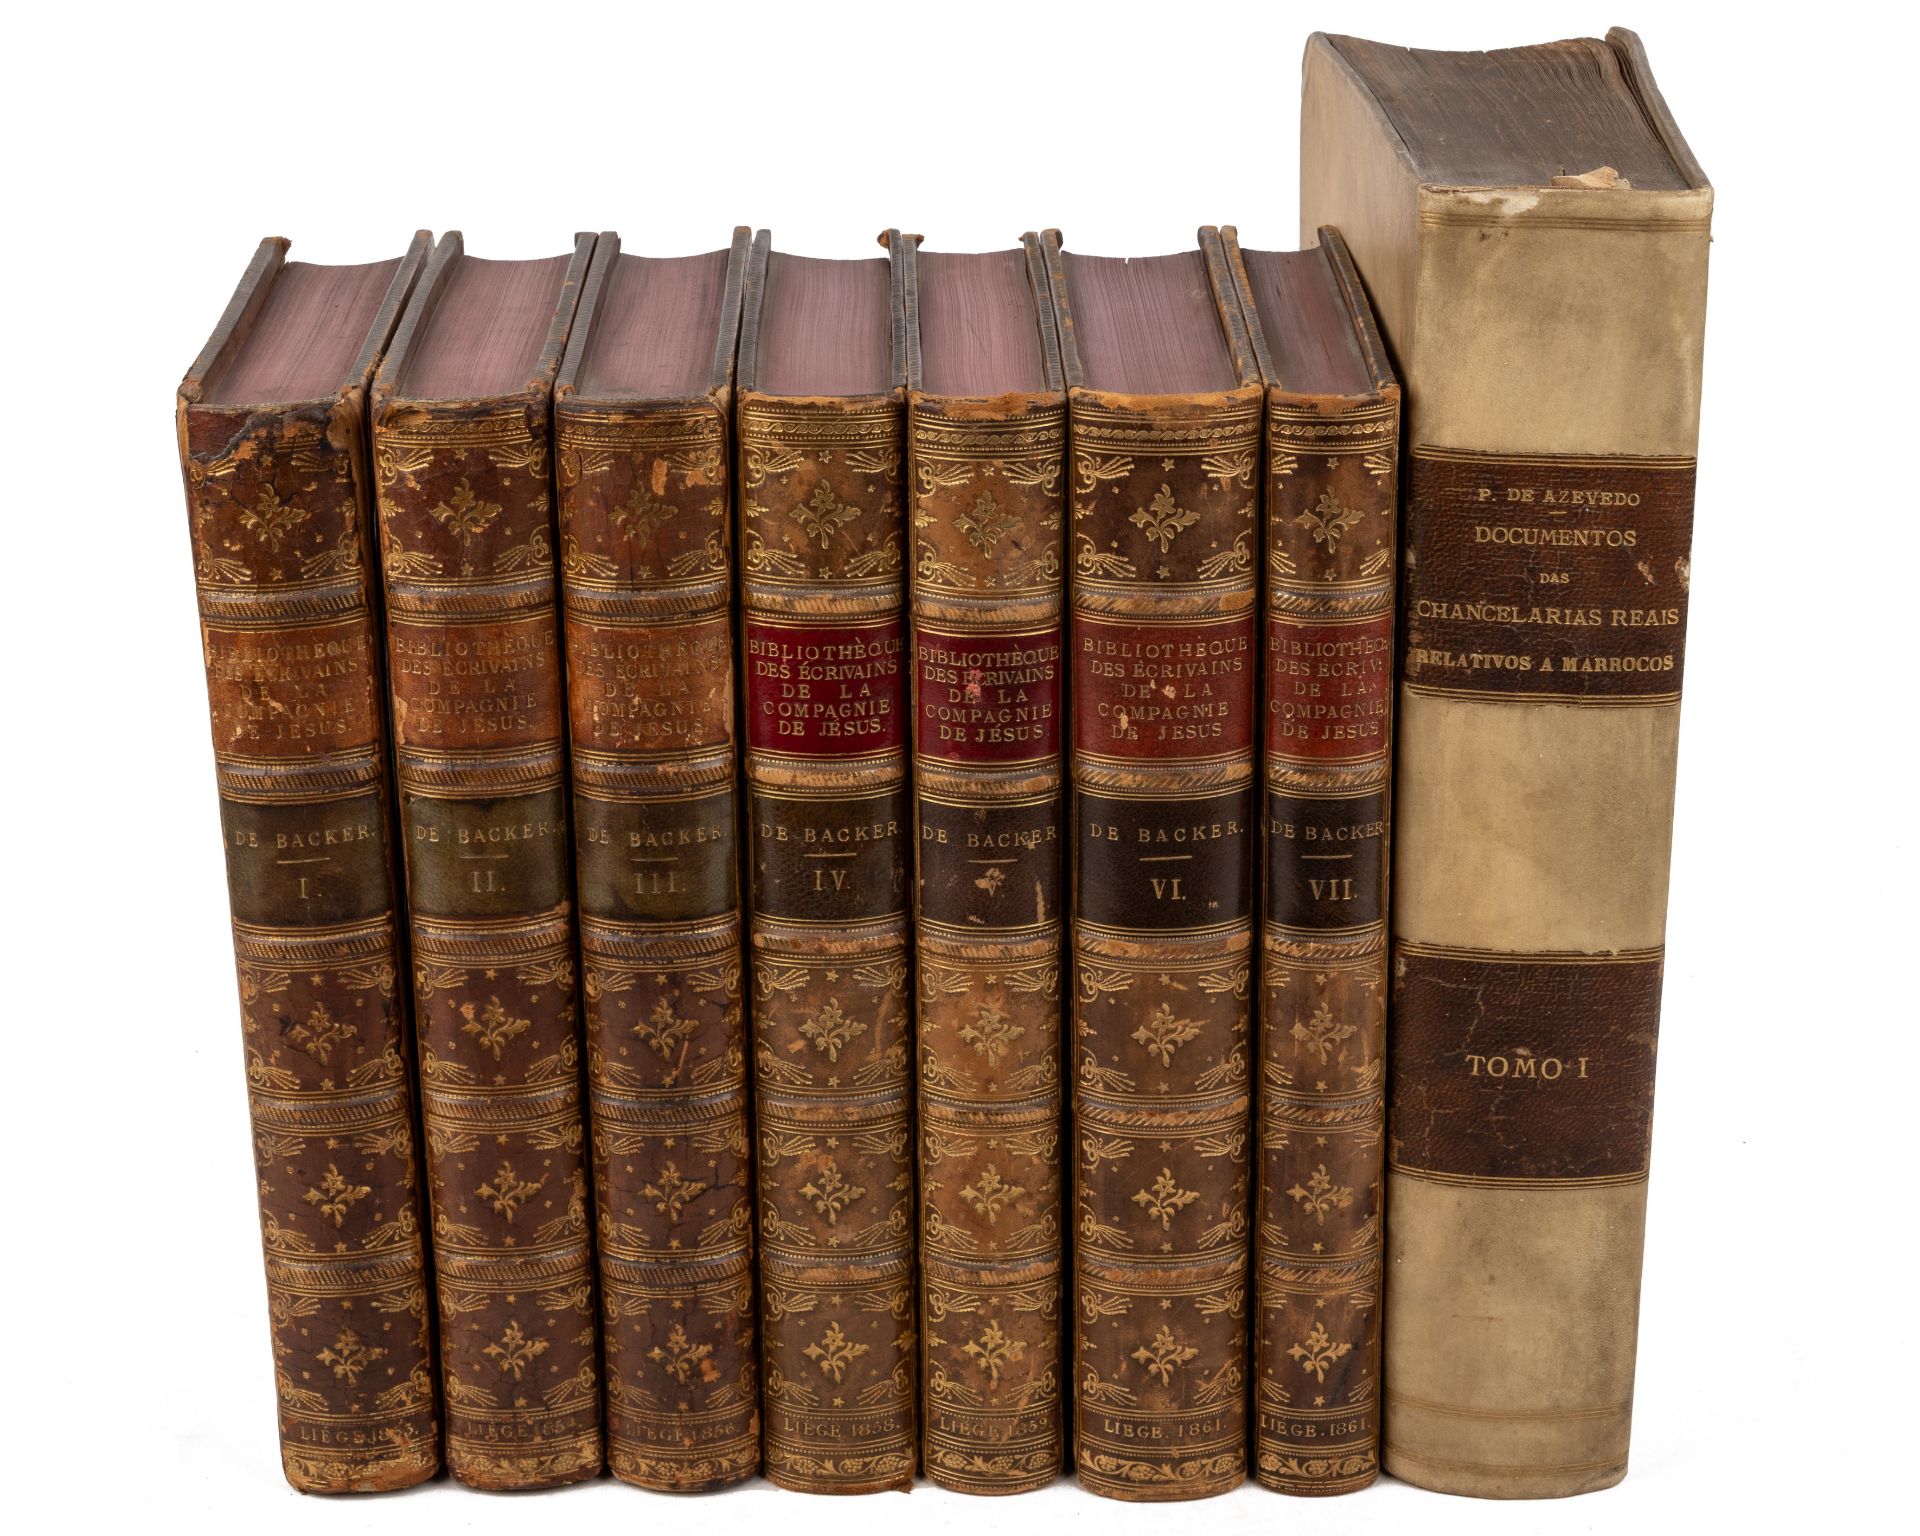 Backer (Augustin et Alois de). Bibliothéque des Ecrivoins de la Compagnie de Jesus... 7 vols 4to.